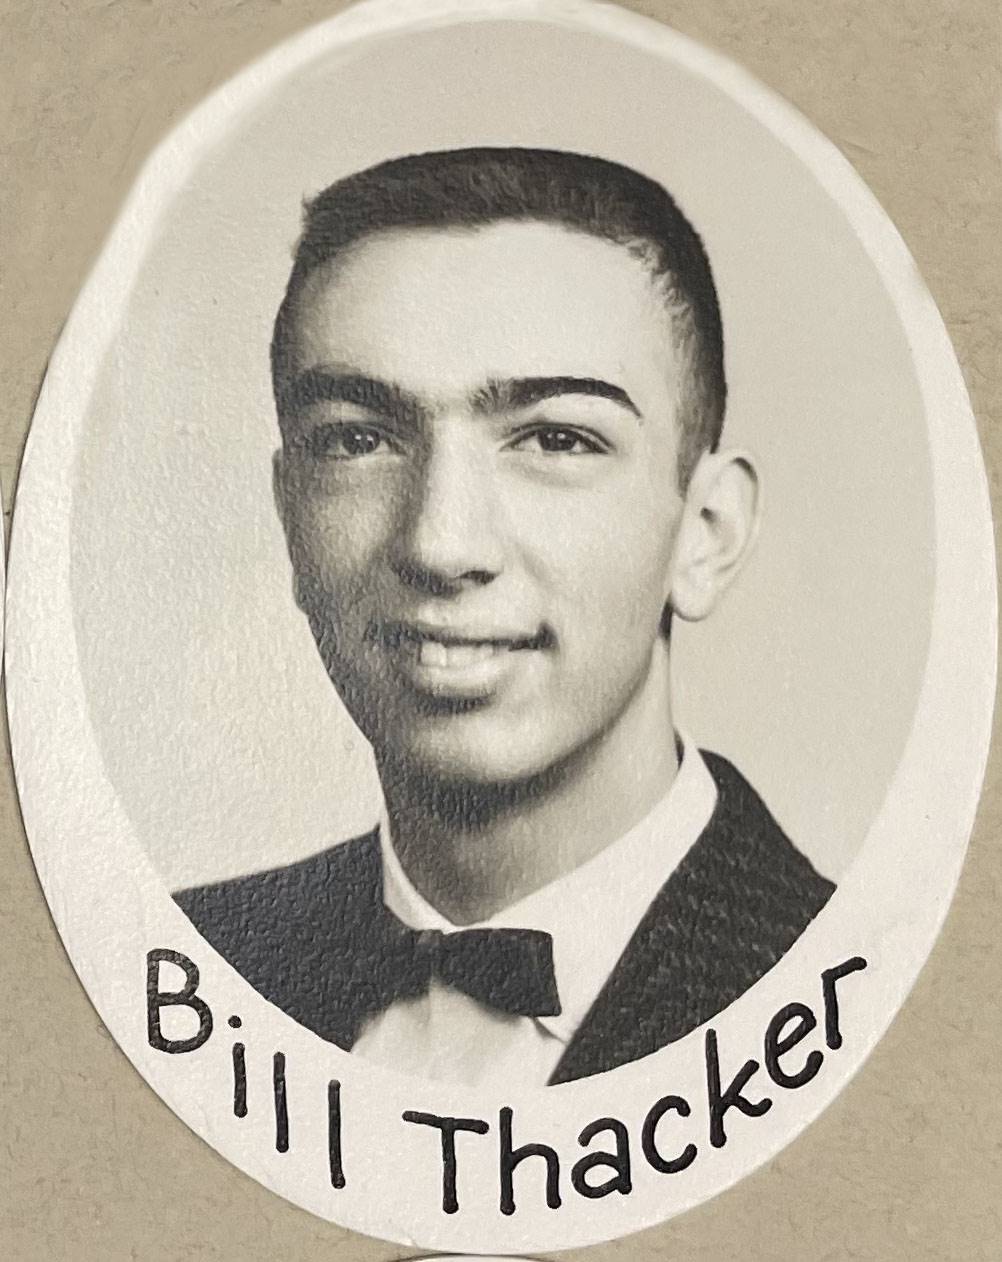 Bill Thacker